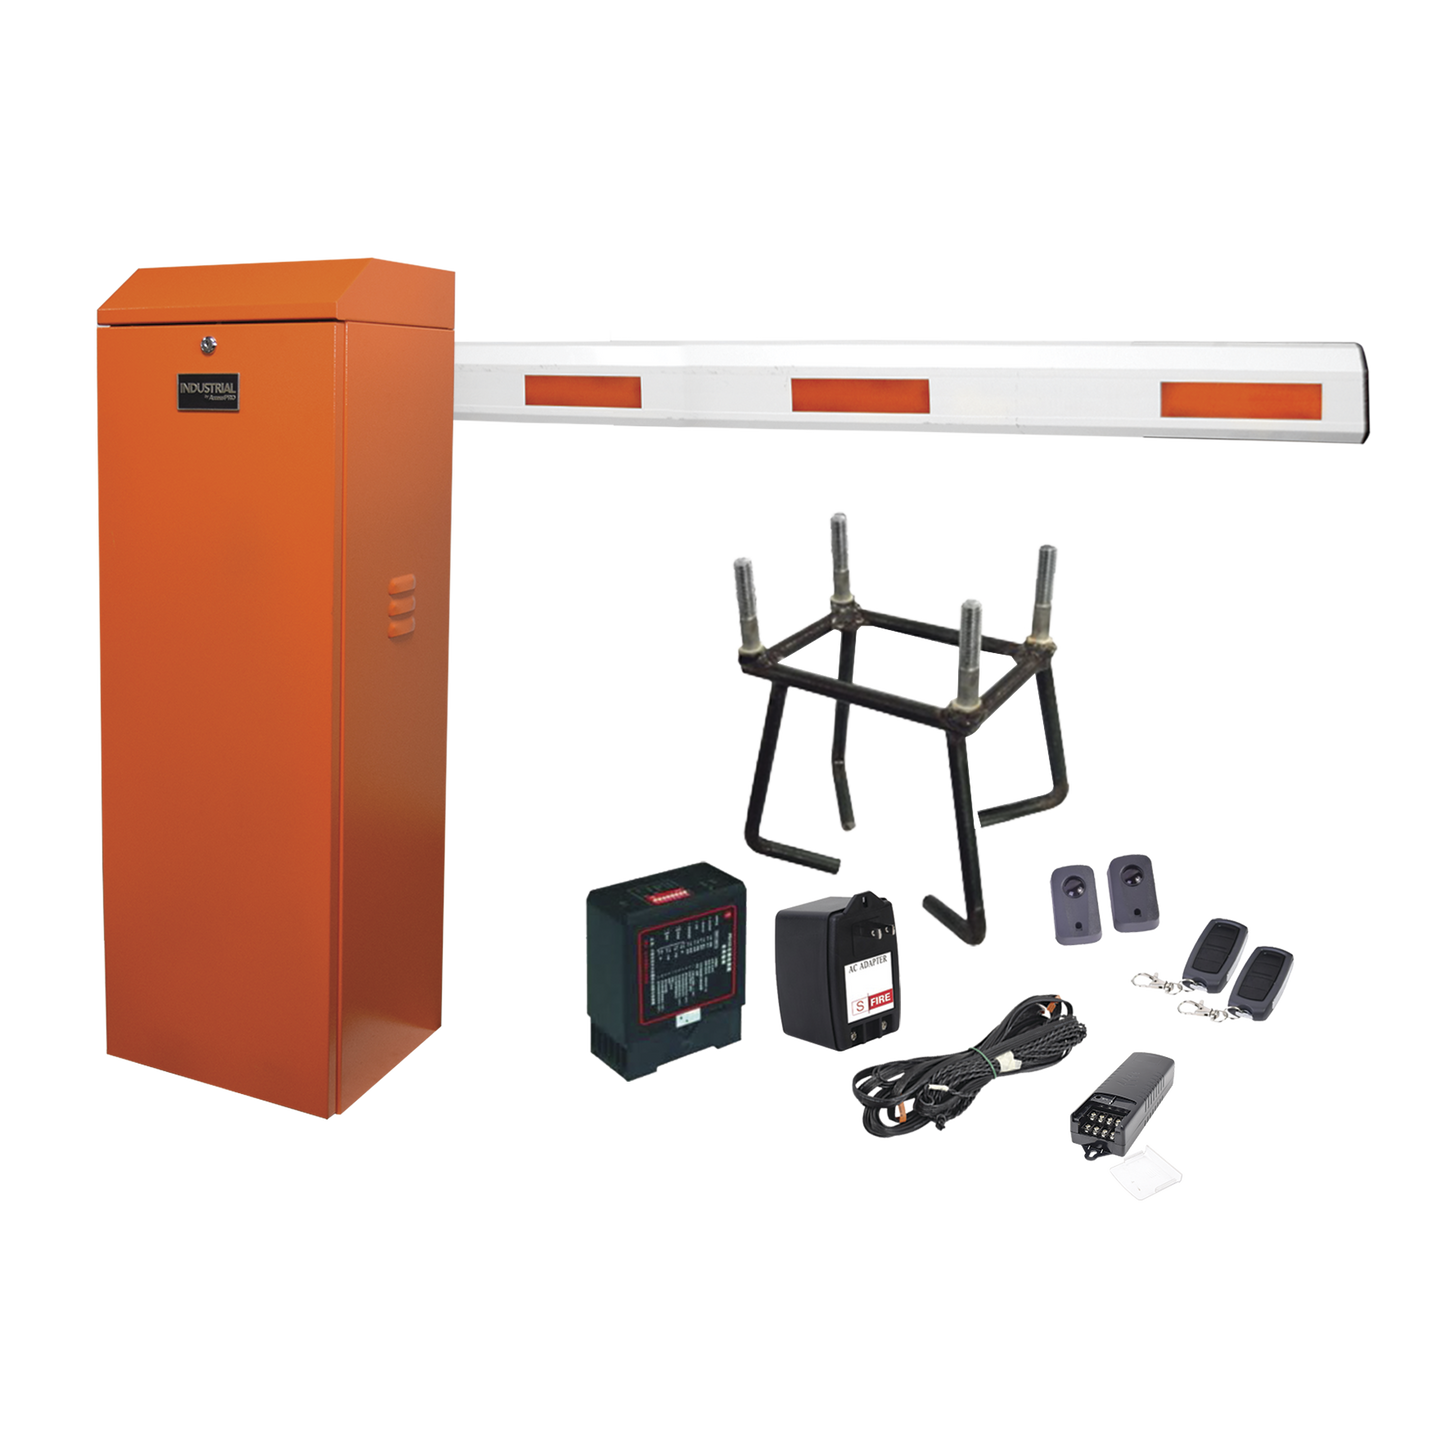 Kit COMPLETO Barrera Derecha XBF naranja / 3M / Incluye Sensor de masa, Transformador, Lazo, Ancla, Fotoceldas y 2 Controles Inalámbricos